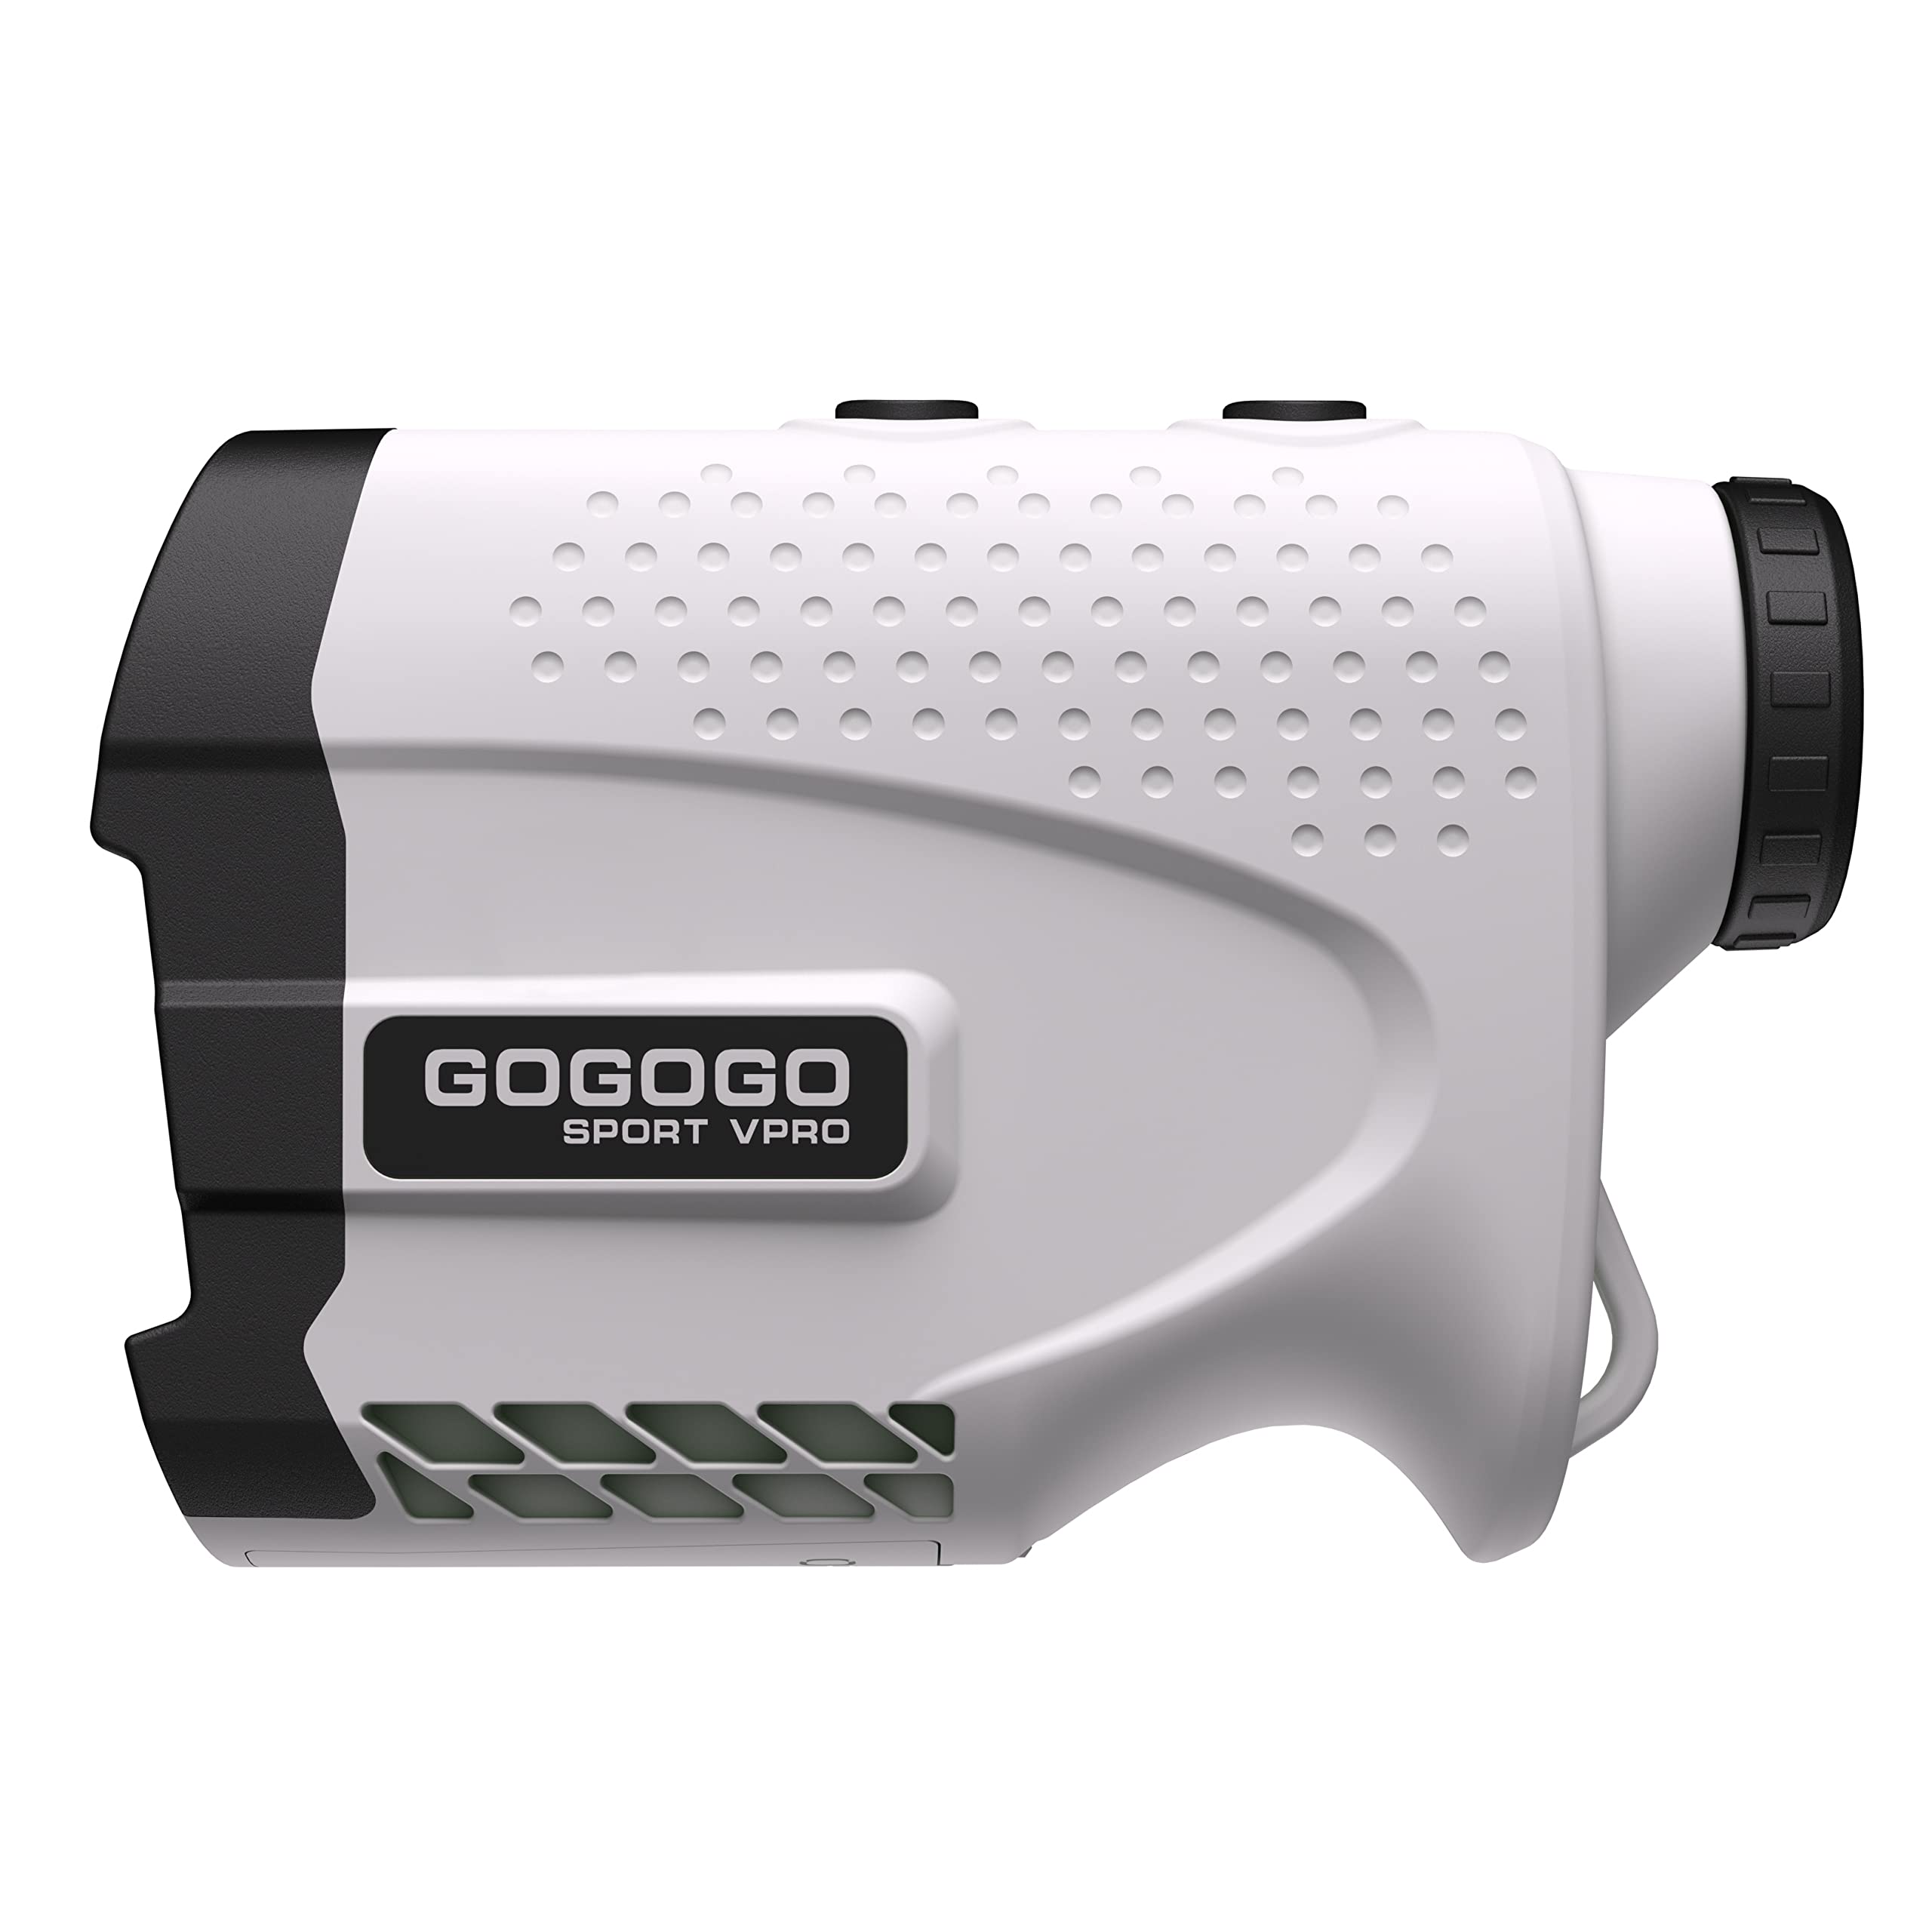 Gogogo Sport Vpro 골프 및 사냥 거리 측정기용 레이저 거리 측정기 고정밀 깃대 잠금 진동 기능으로 거리 측정 슬로프 모드 연속 스캔